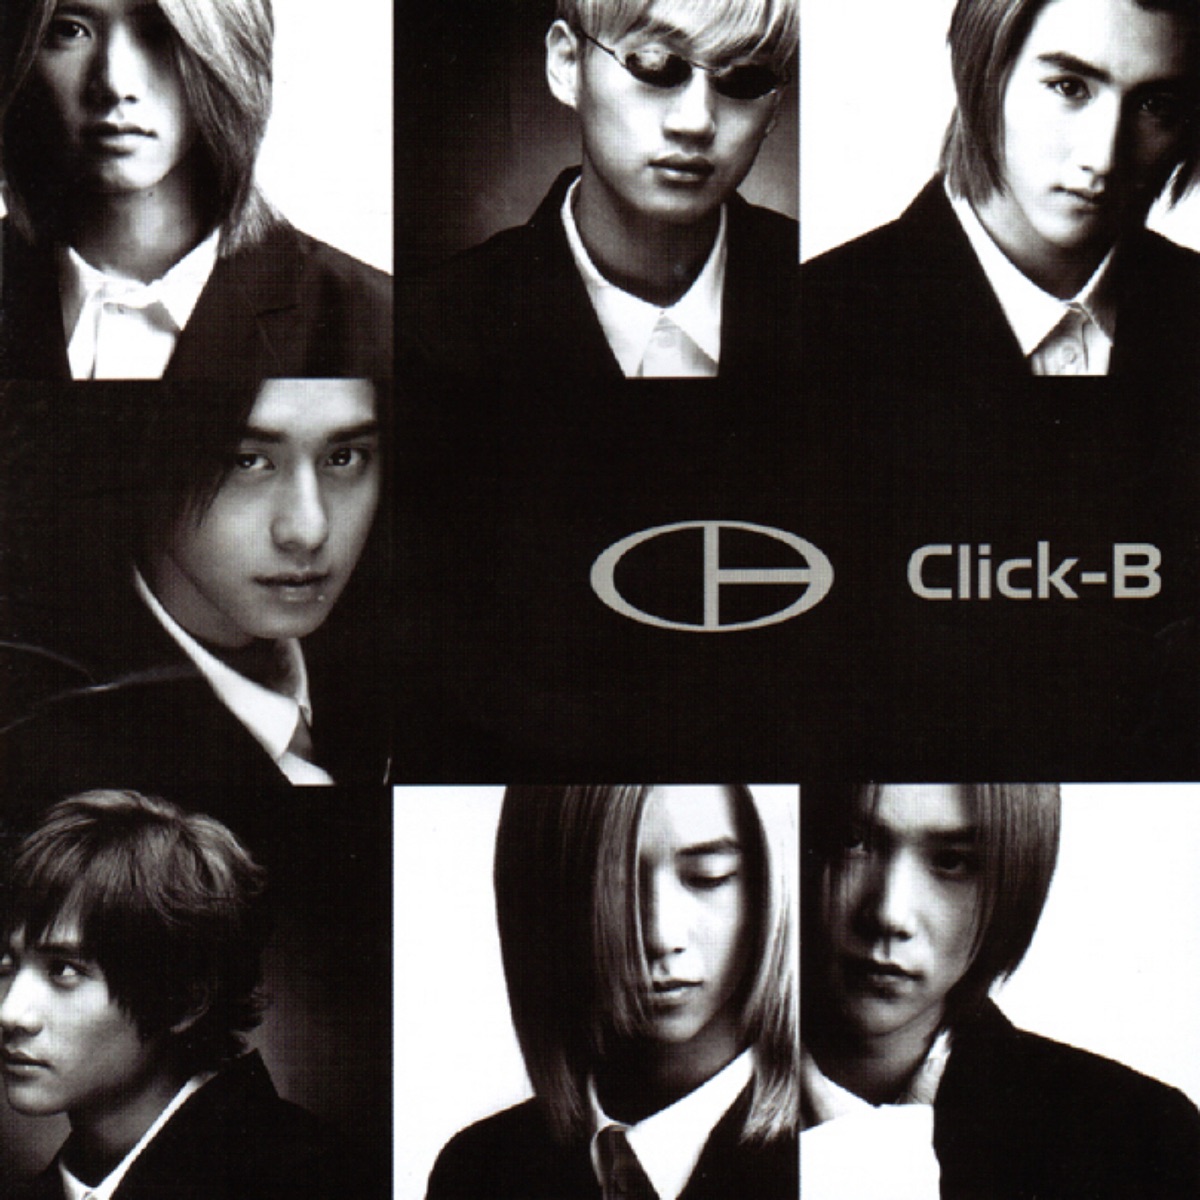 Click-B – Click-B